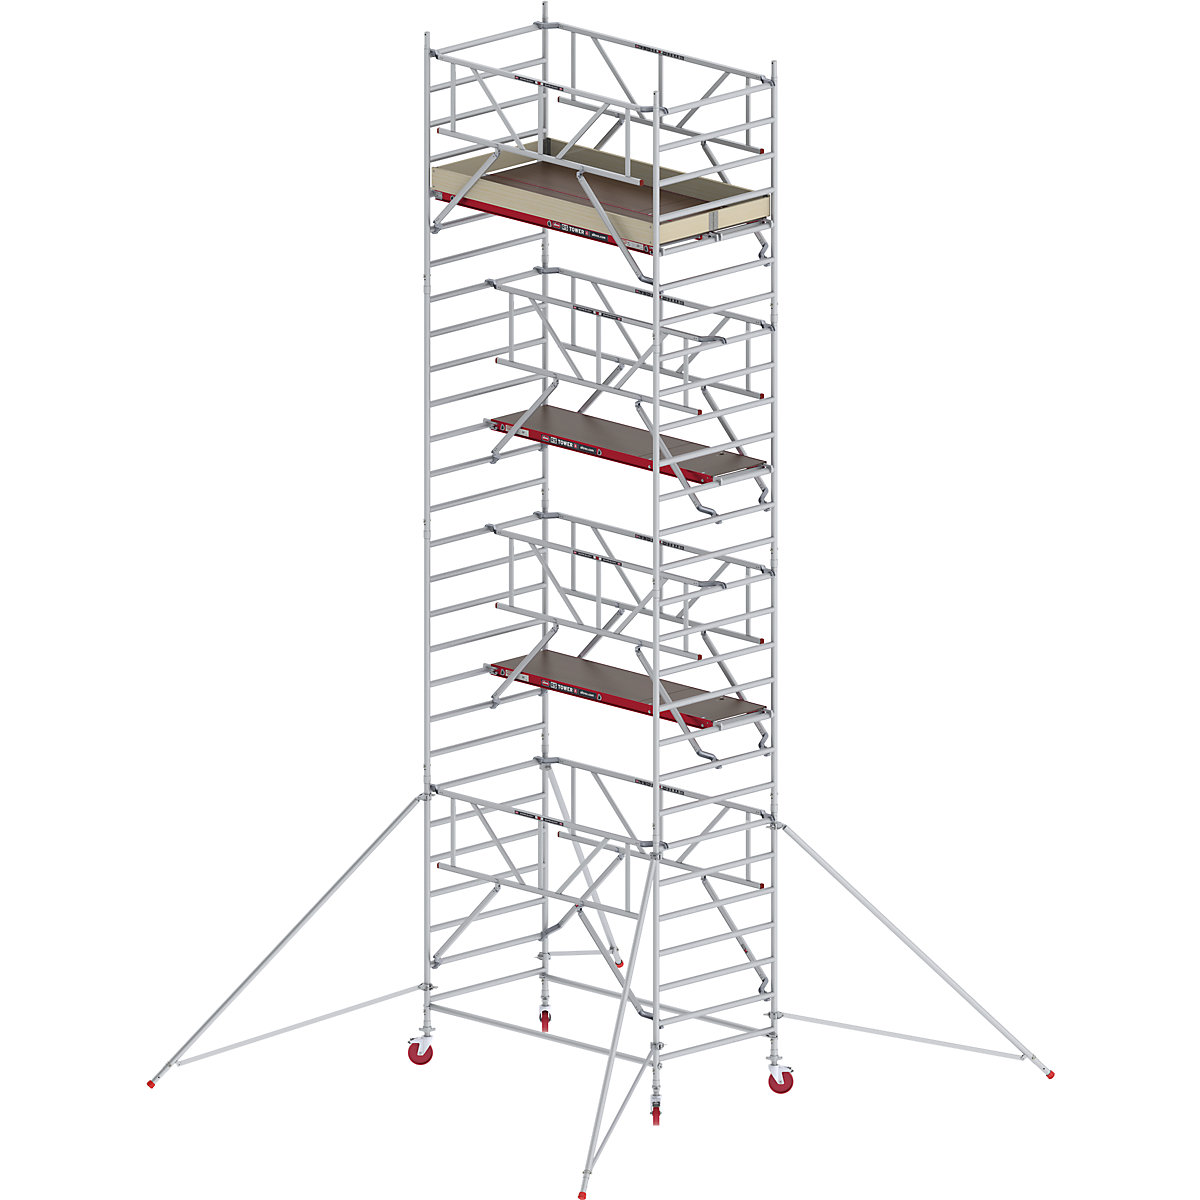 Altrex Fahrgerüst RS TOWER 42 breit mit Safe-Quick®, Holzplattform, Länge 1,85 m, Arbeitshöhe 9,20 m